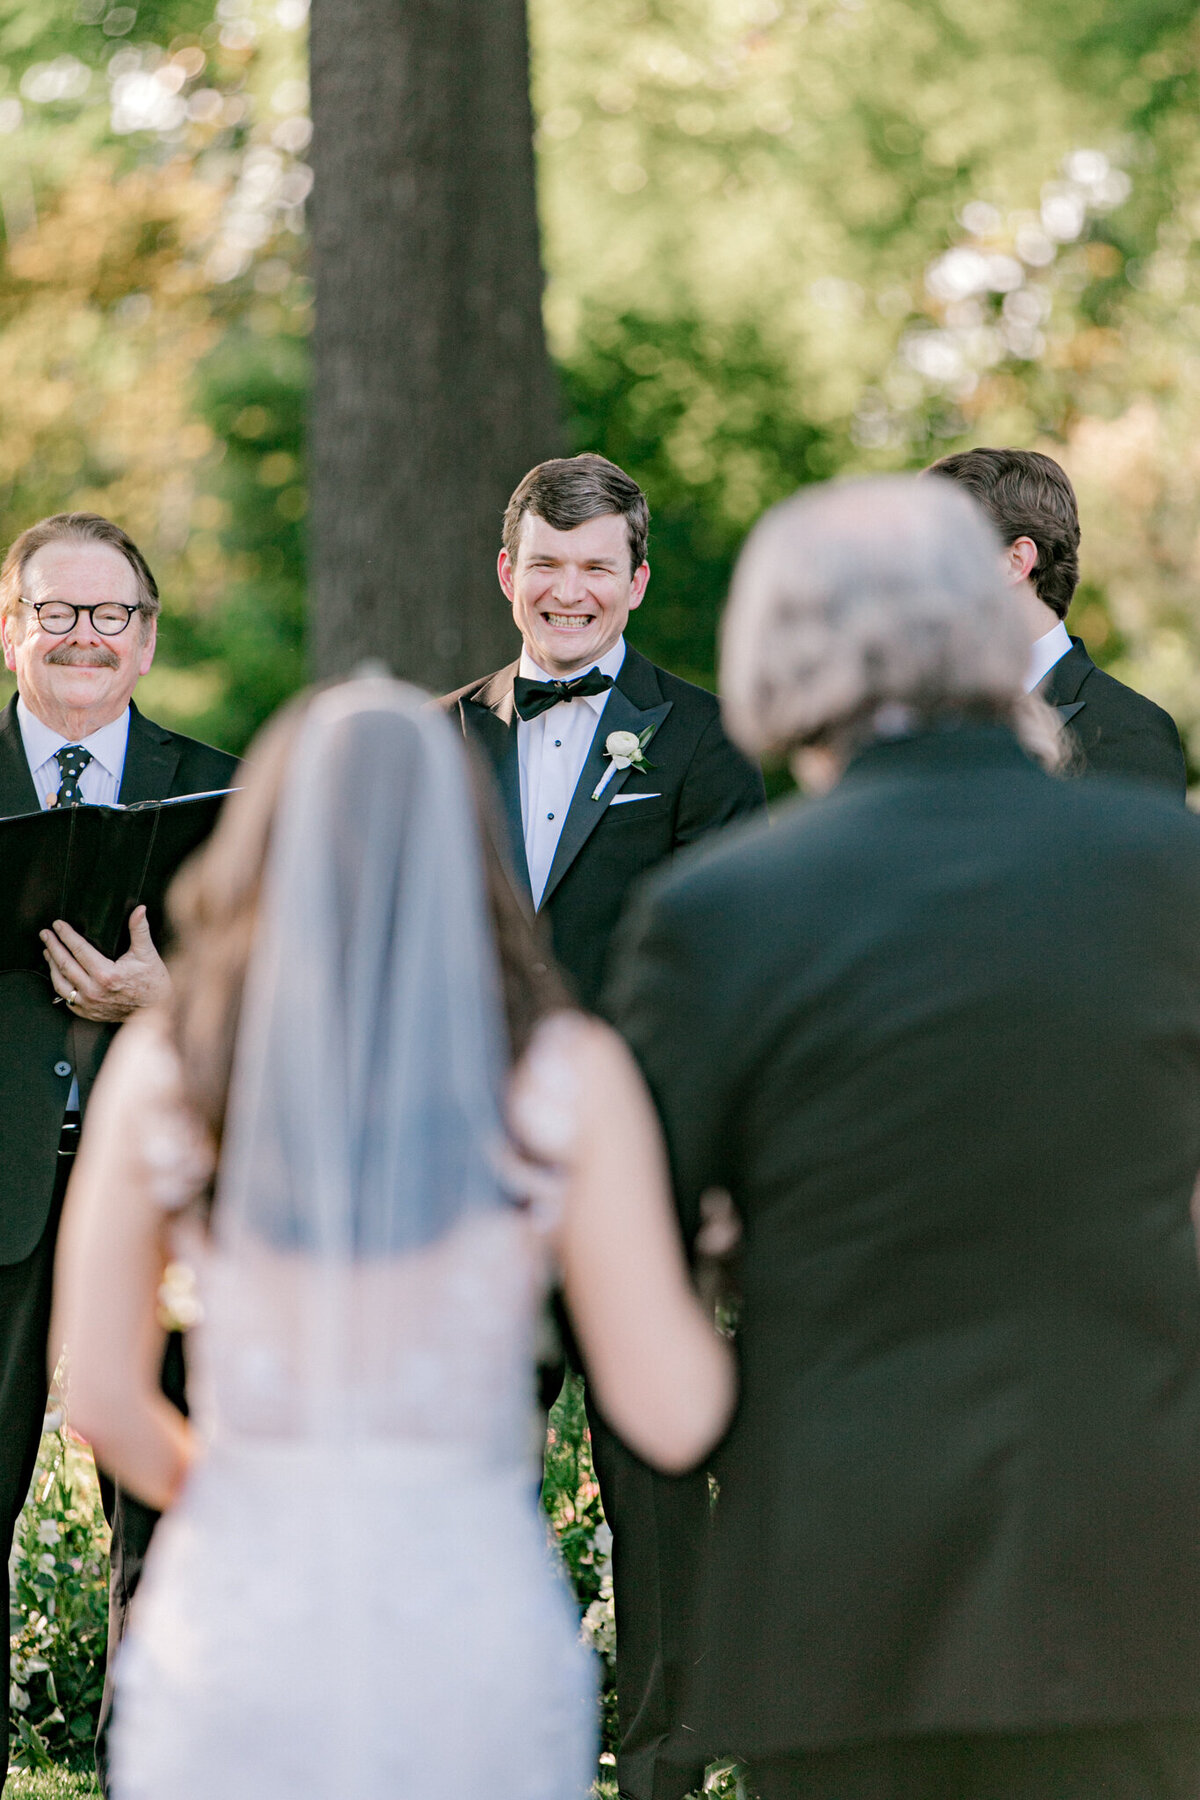 Gena & Matt's Wedding at the Dallas Arboretum | Dallas Wedding Photographer | Sami Kathryn Photography-135